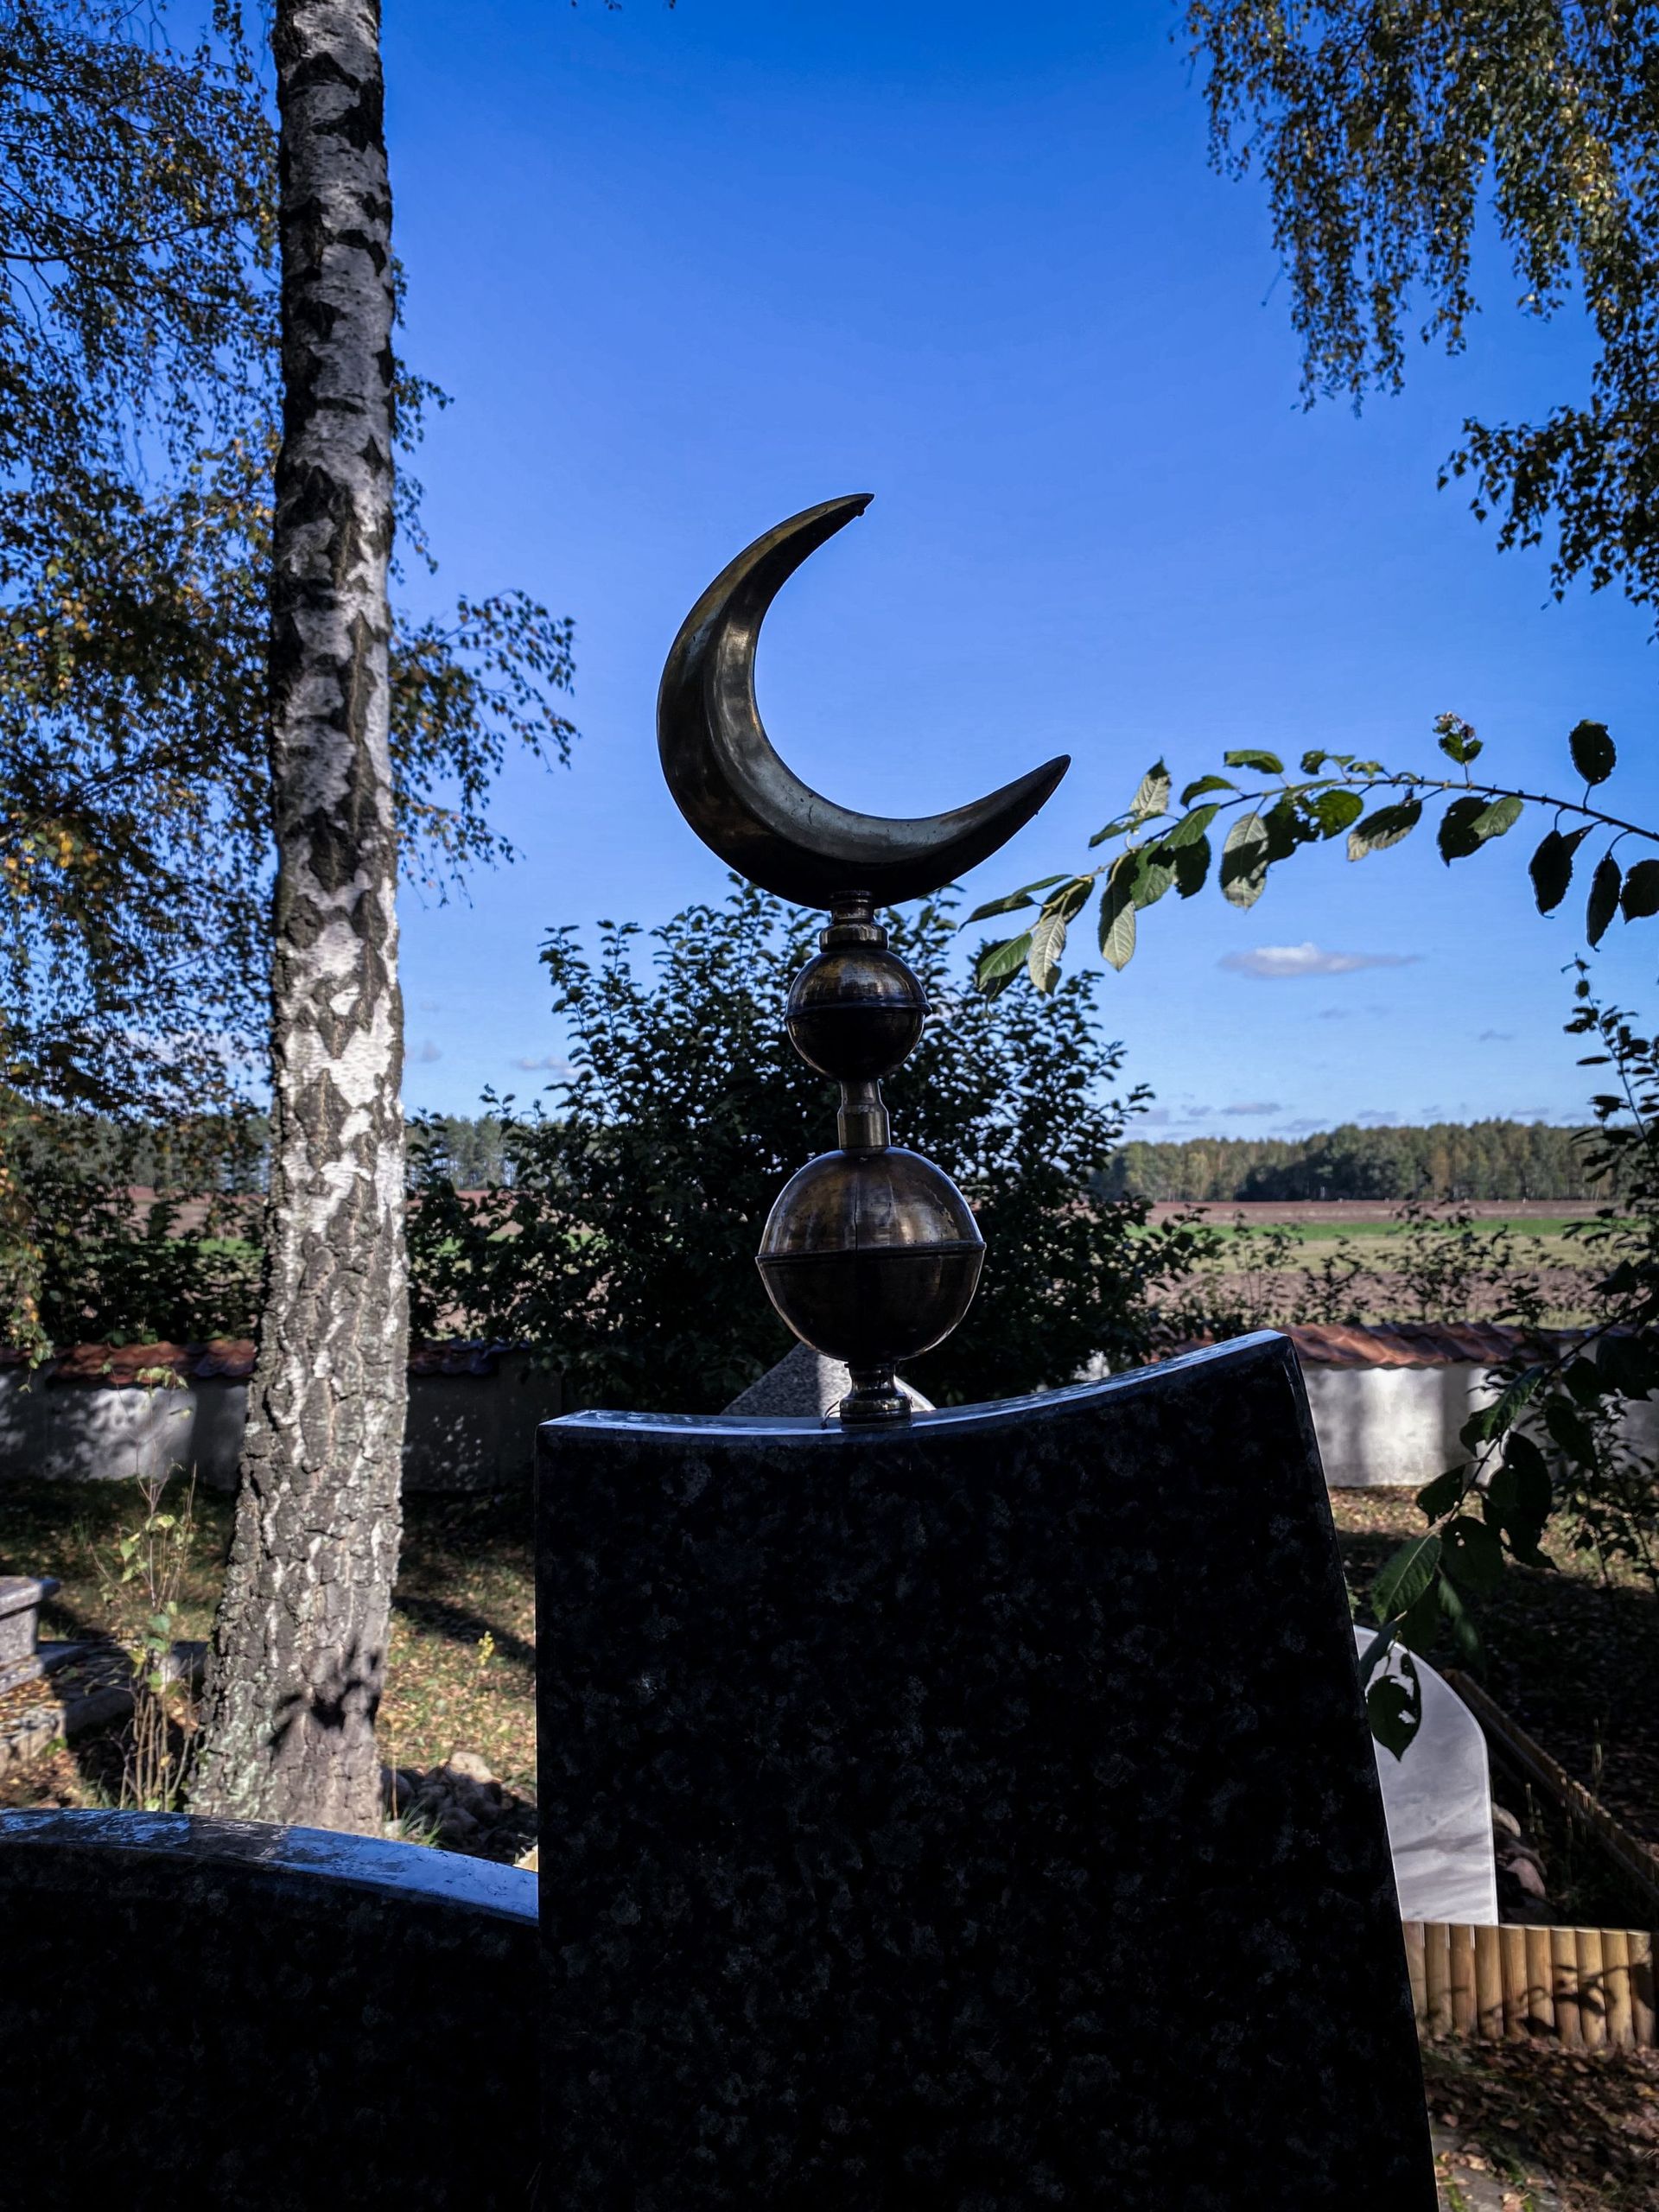 Les tombes du cimetière tatar, musulman, de Bohoniki, face à la campagne qui le sépare de la frontière.